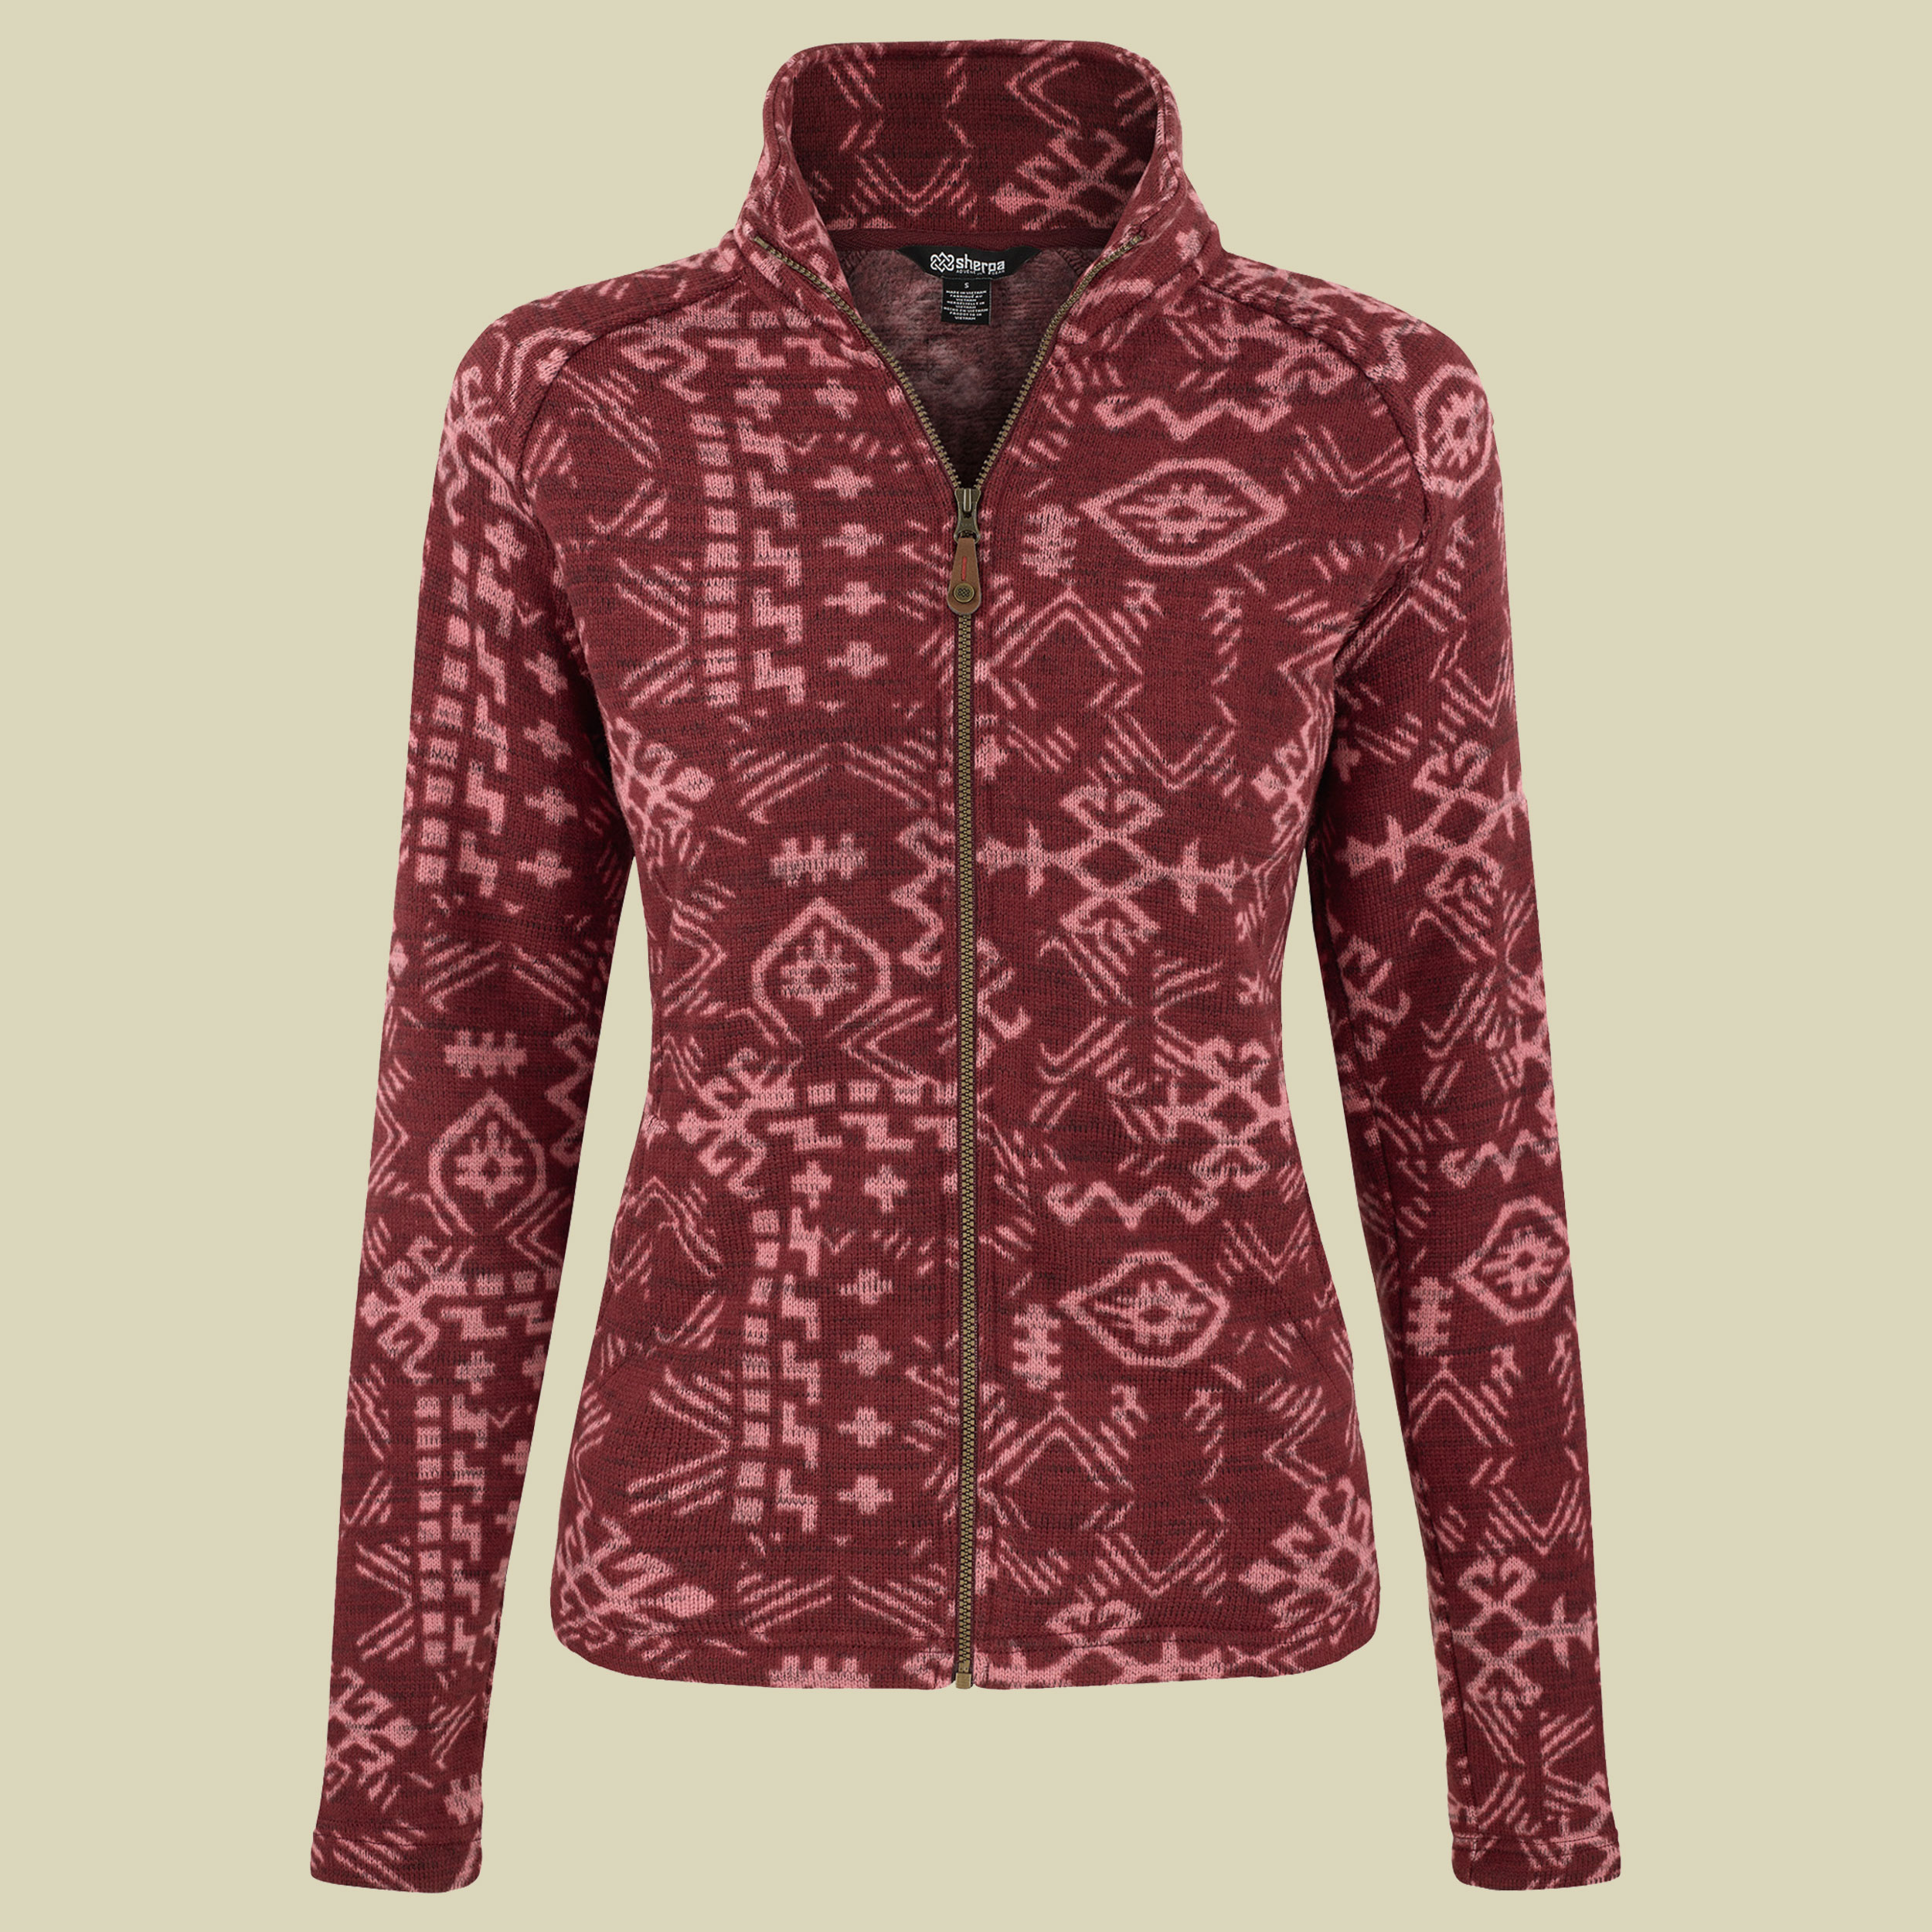 Bhutan Full Zip Jacket Women Größe XL Farbe beet red abstract